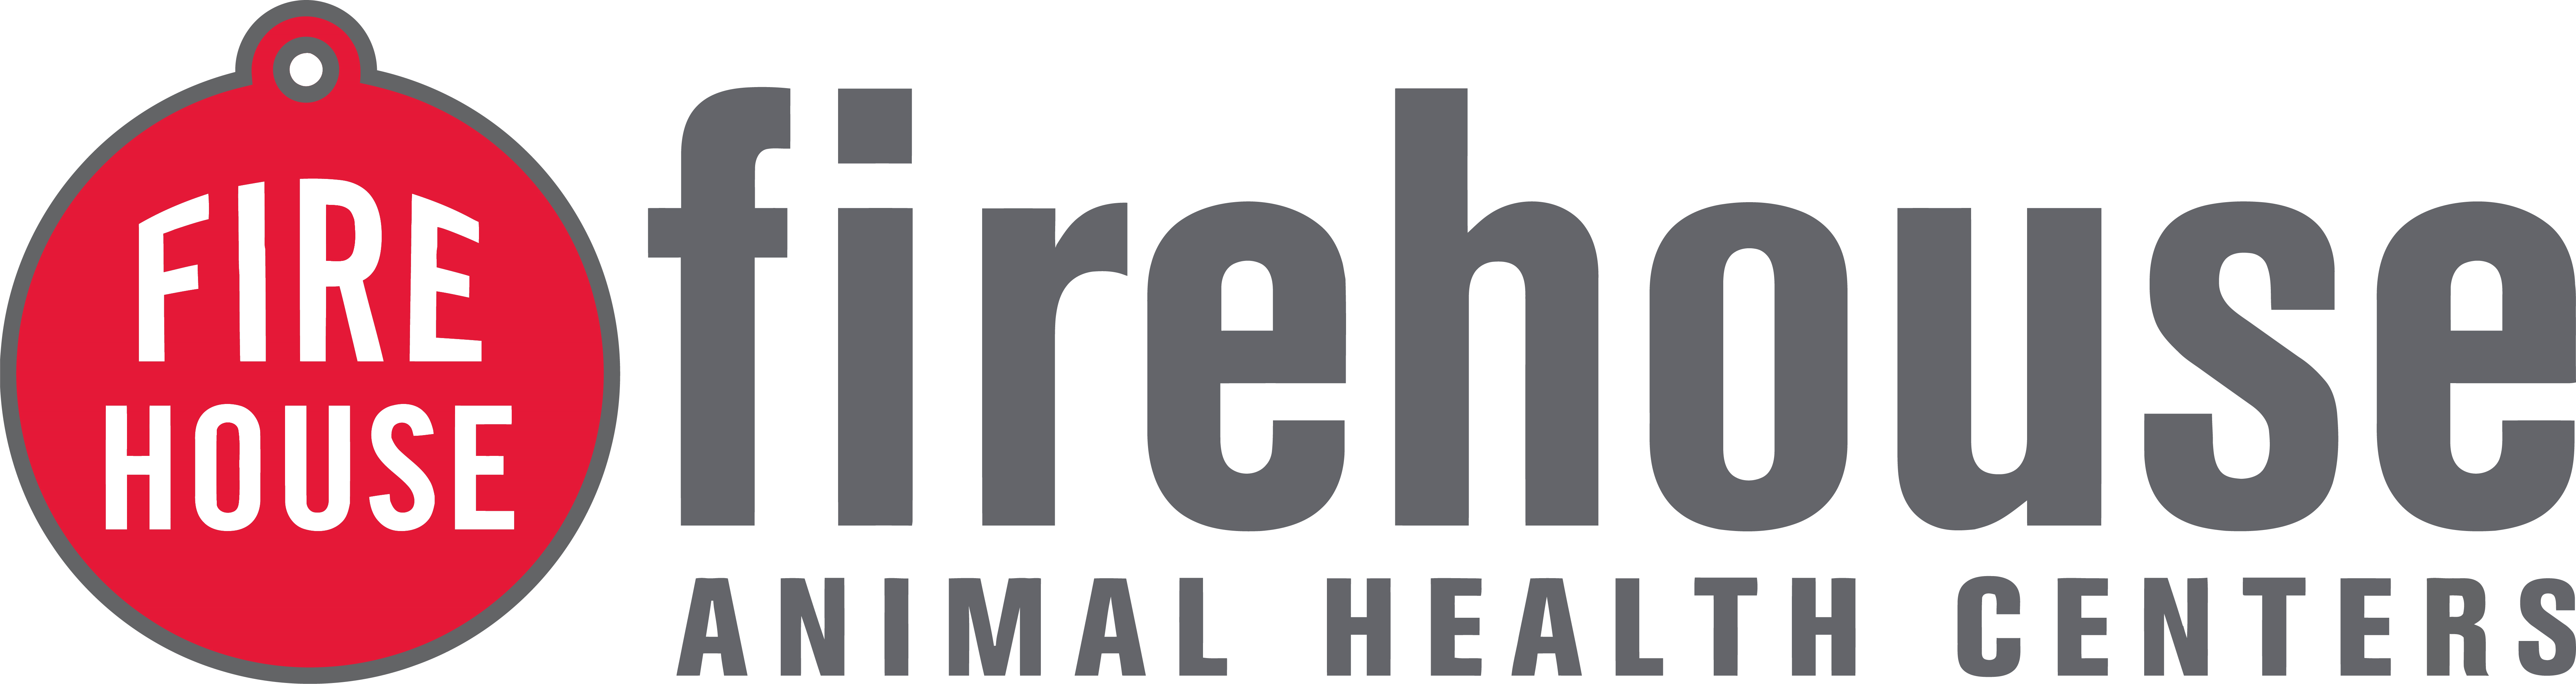 Firehouse Animal Health Centers Company Logo